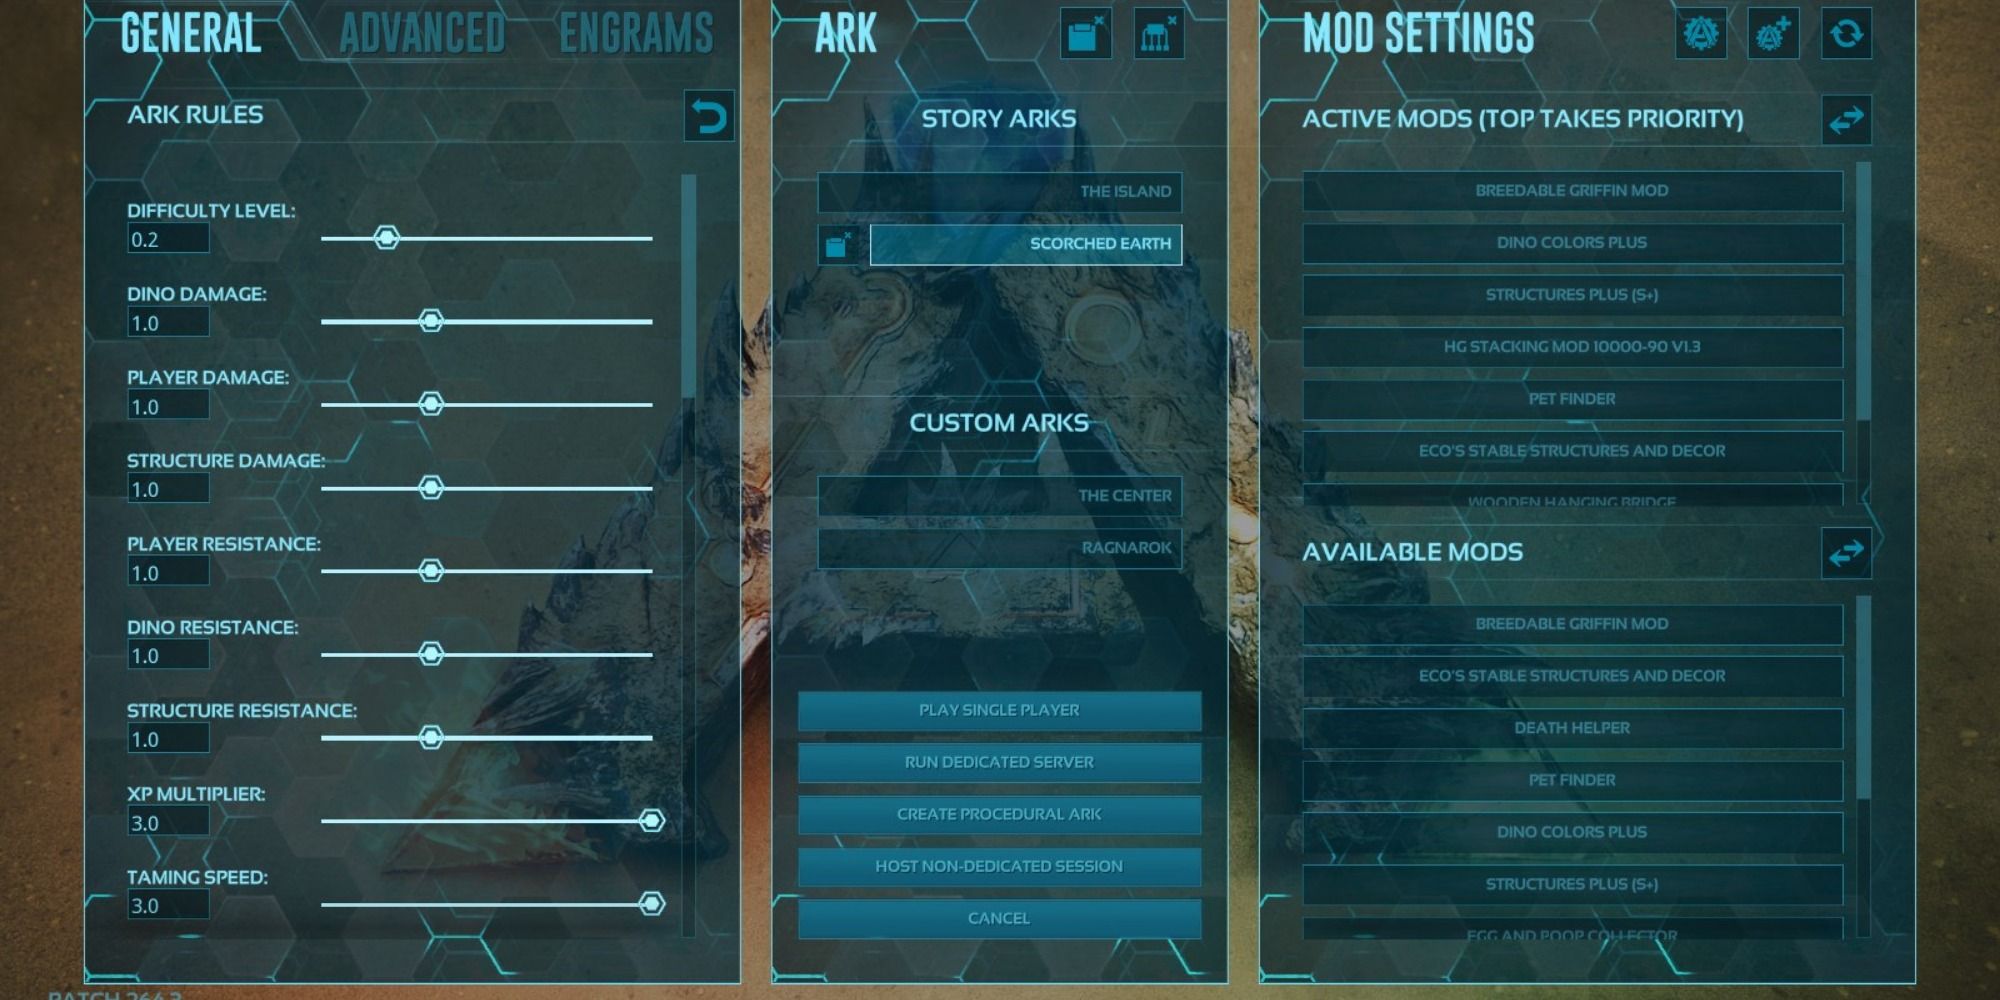 Server settings in Ark: Survival Evolved